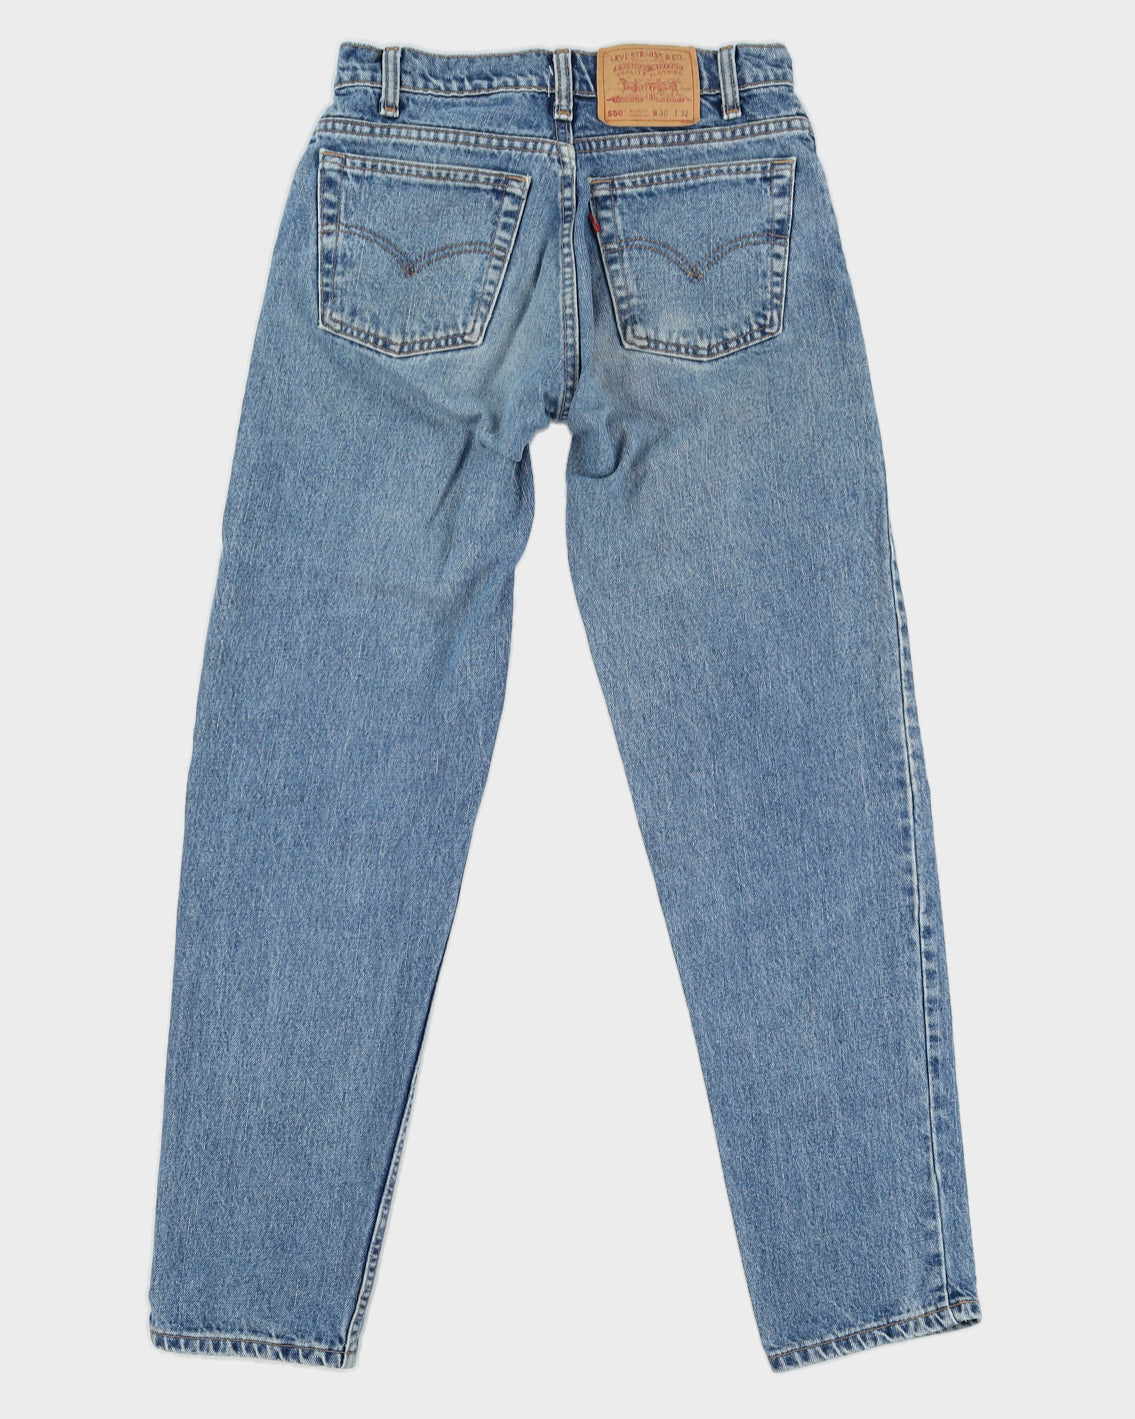 Vintage 90s Levi's Medium Wash 550 Jeans - W30 L 32